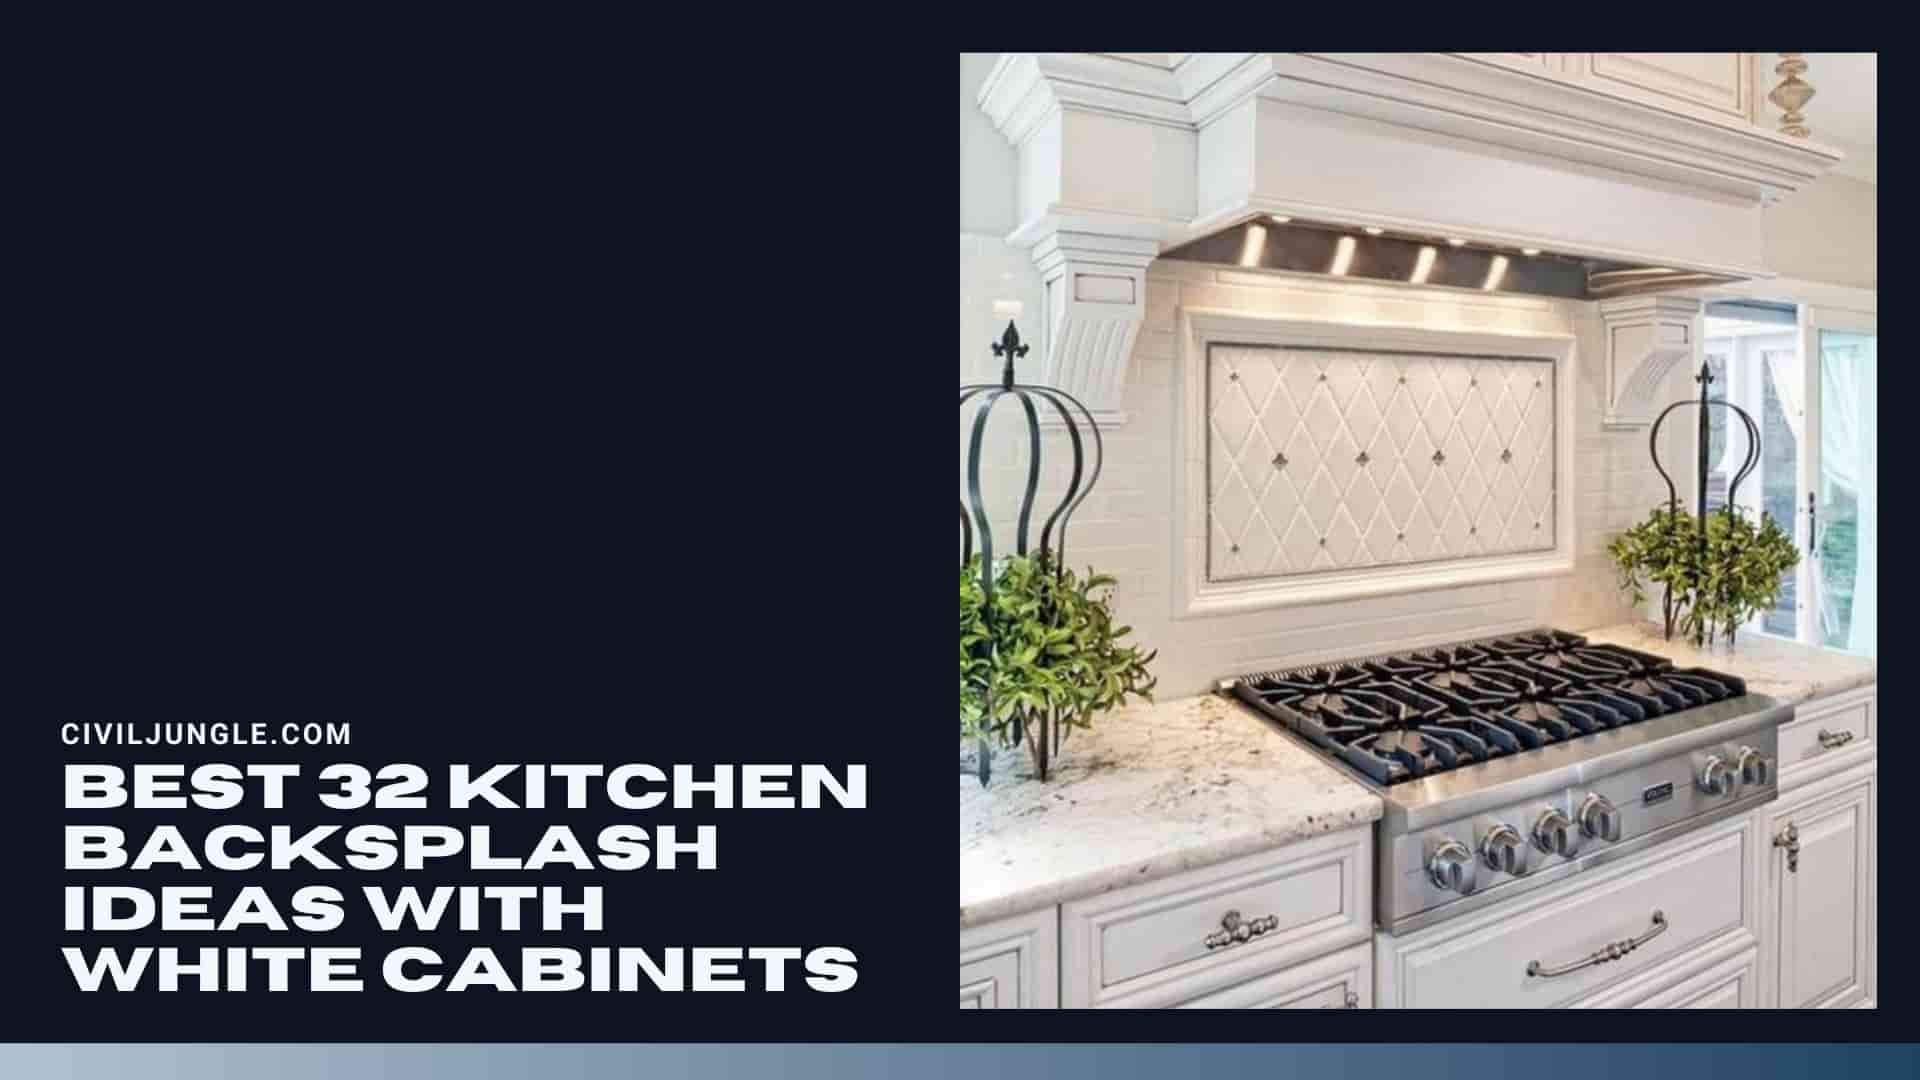 Best 32 Kitchen Backsplash Ideas with White Cabinets